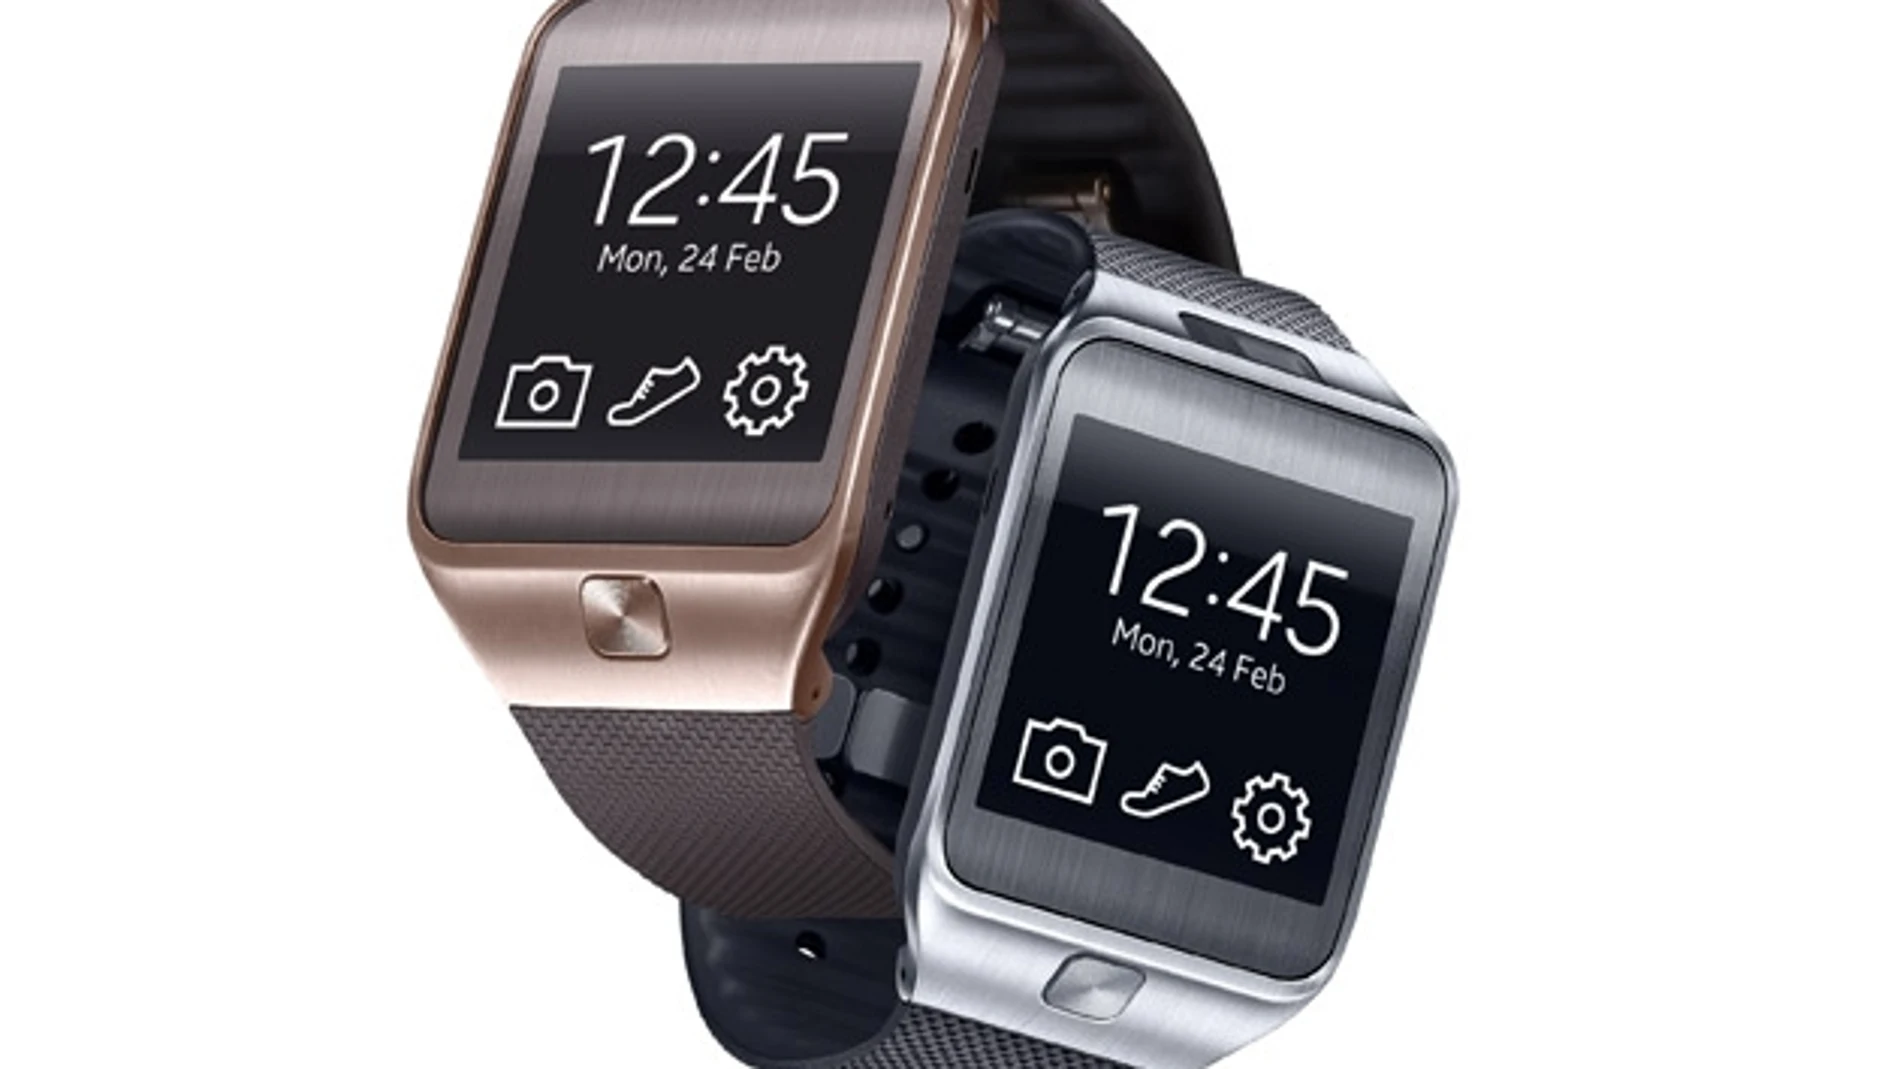 Los nuevos relojes inteligentes de Samsung abandonan Android y abrazan Tizen